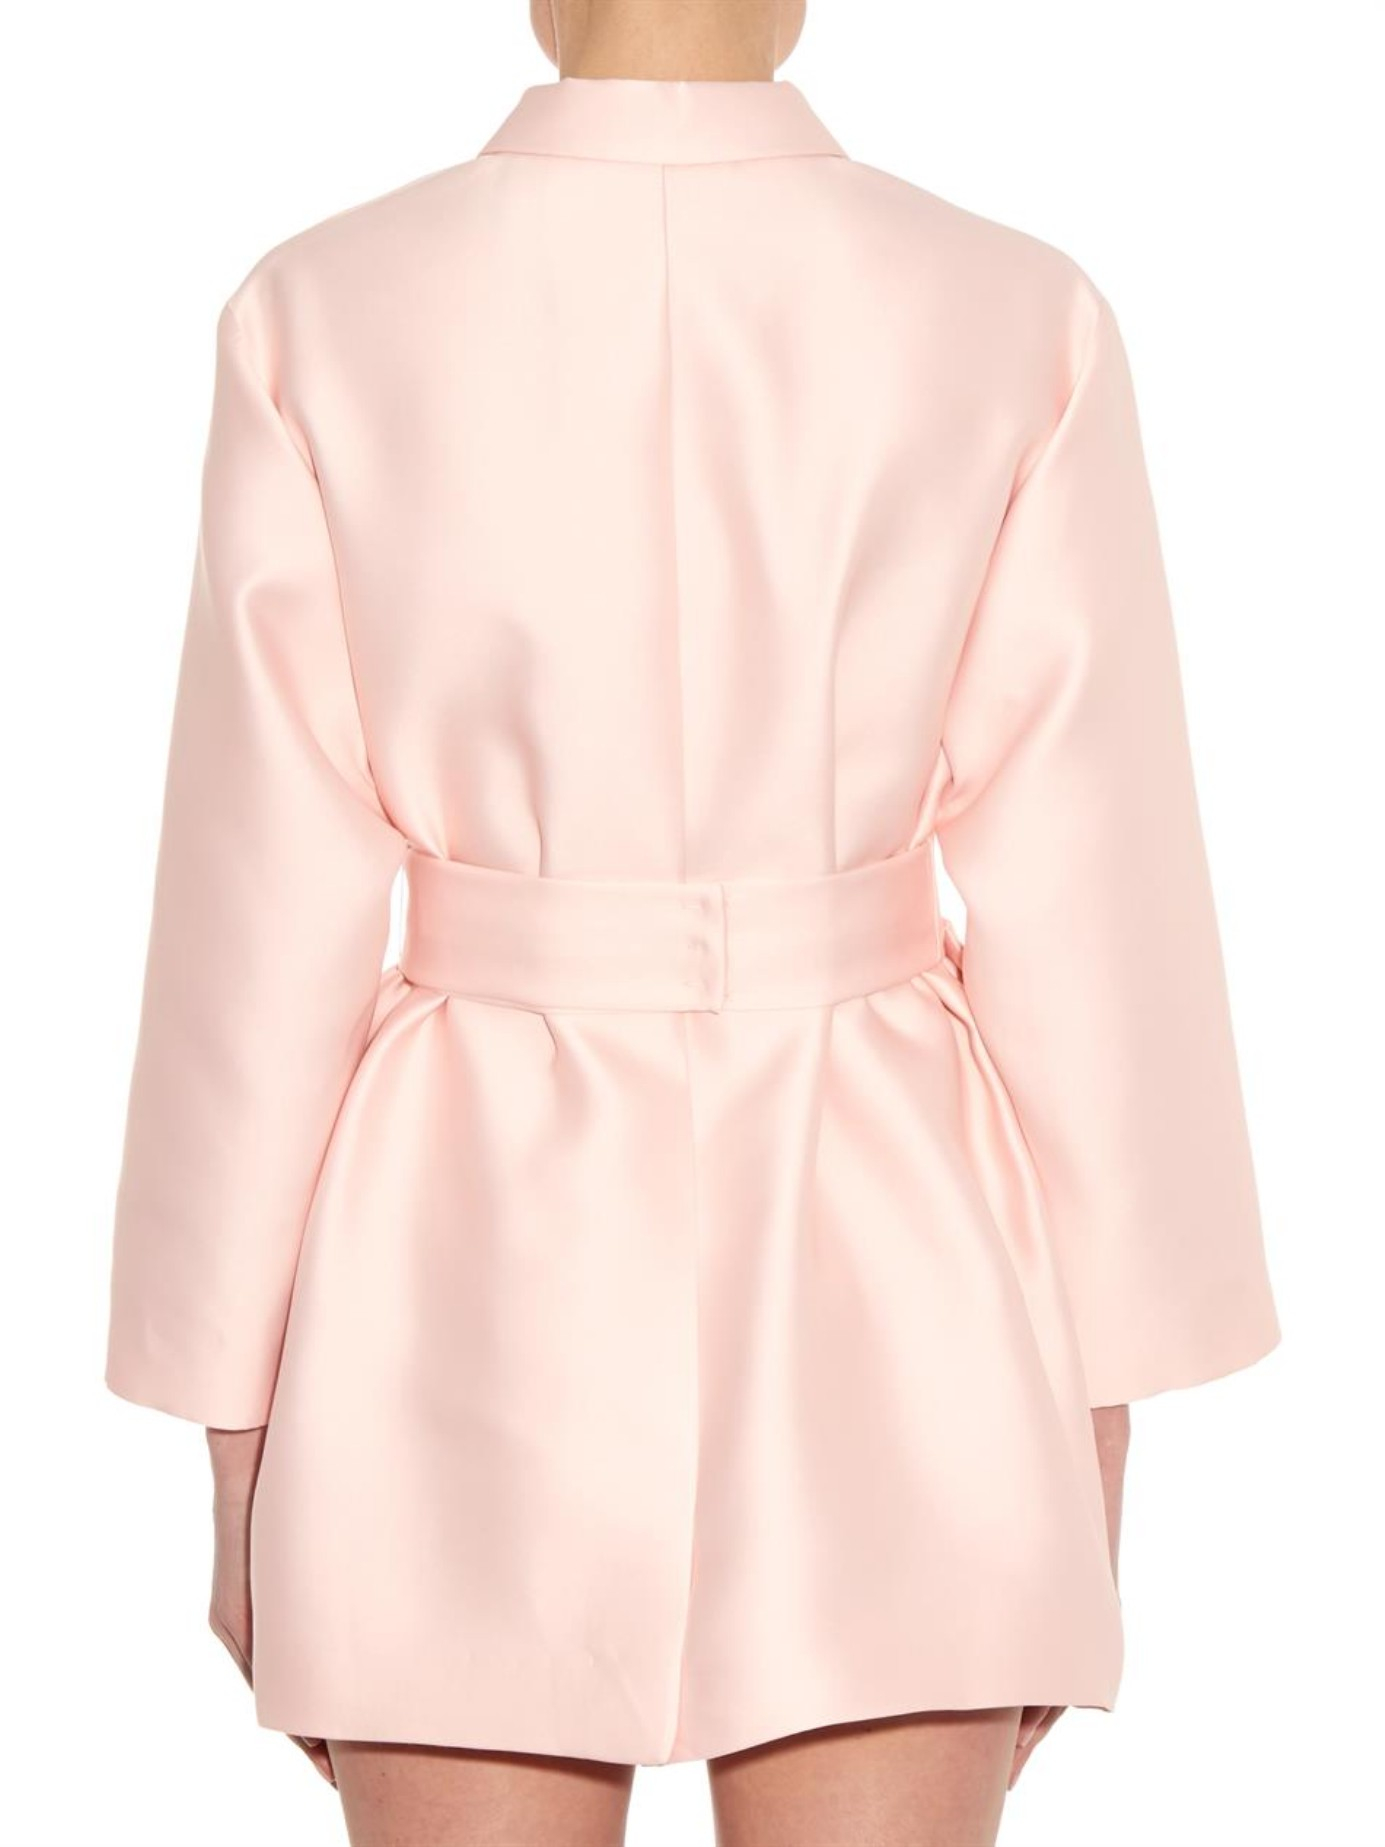 Emilia Wickstead Madge Duchess-Satin Coat Dress in Light Pink (Pink) - Lyst